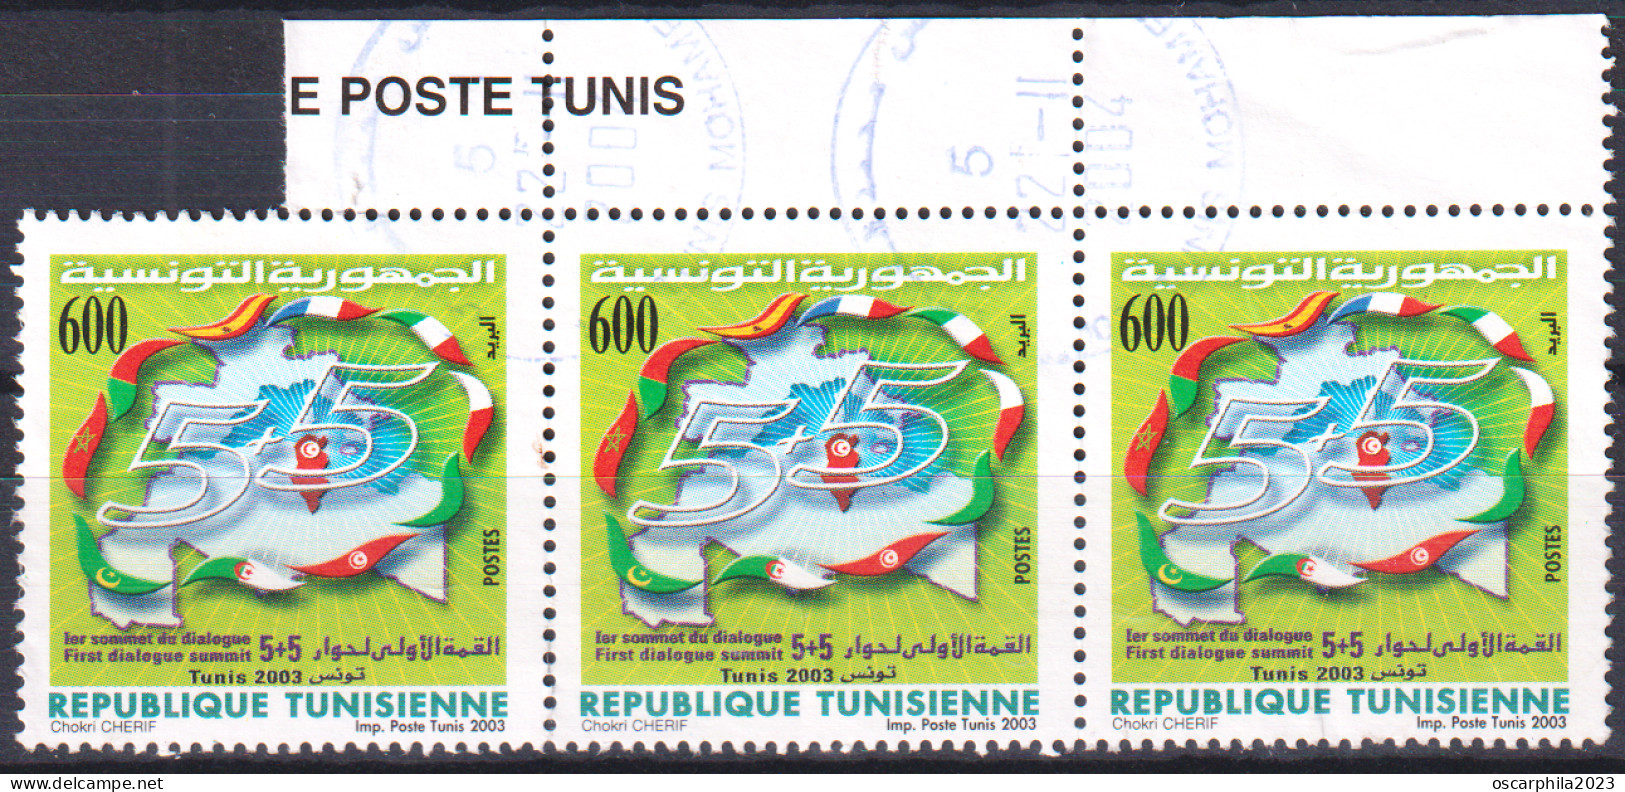 2003-Tunisie / Y&T 1502 - 1er Sommet Du Dialogue 5+5 - Tunis 2003 - Bande De 3 Obli - Tunisia